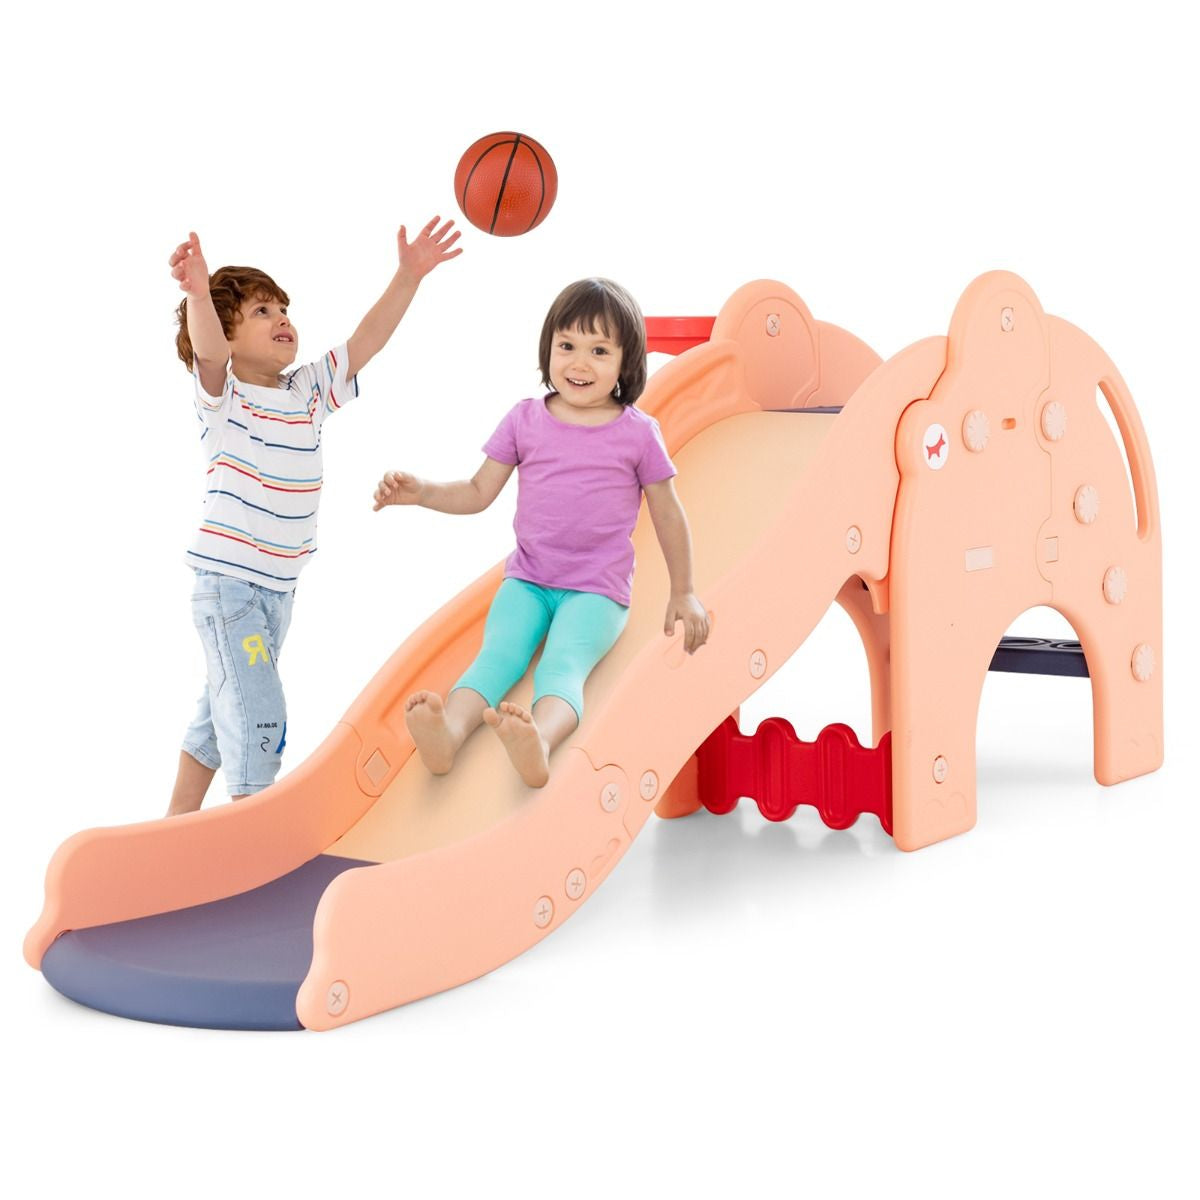 Slide infantil em formato de elefante, 4 em 1, com cesta e zona amortecedora de basquete, trilhos antiderrapantes para crianças, rosa/verde